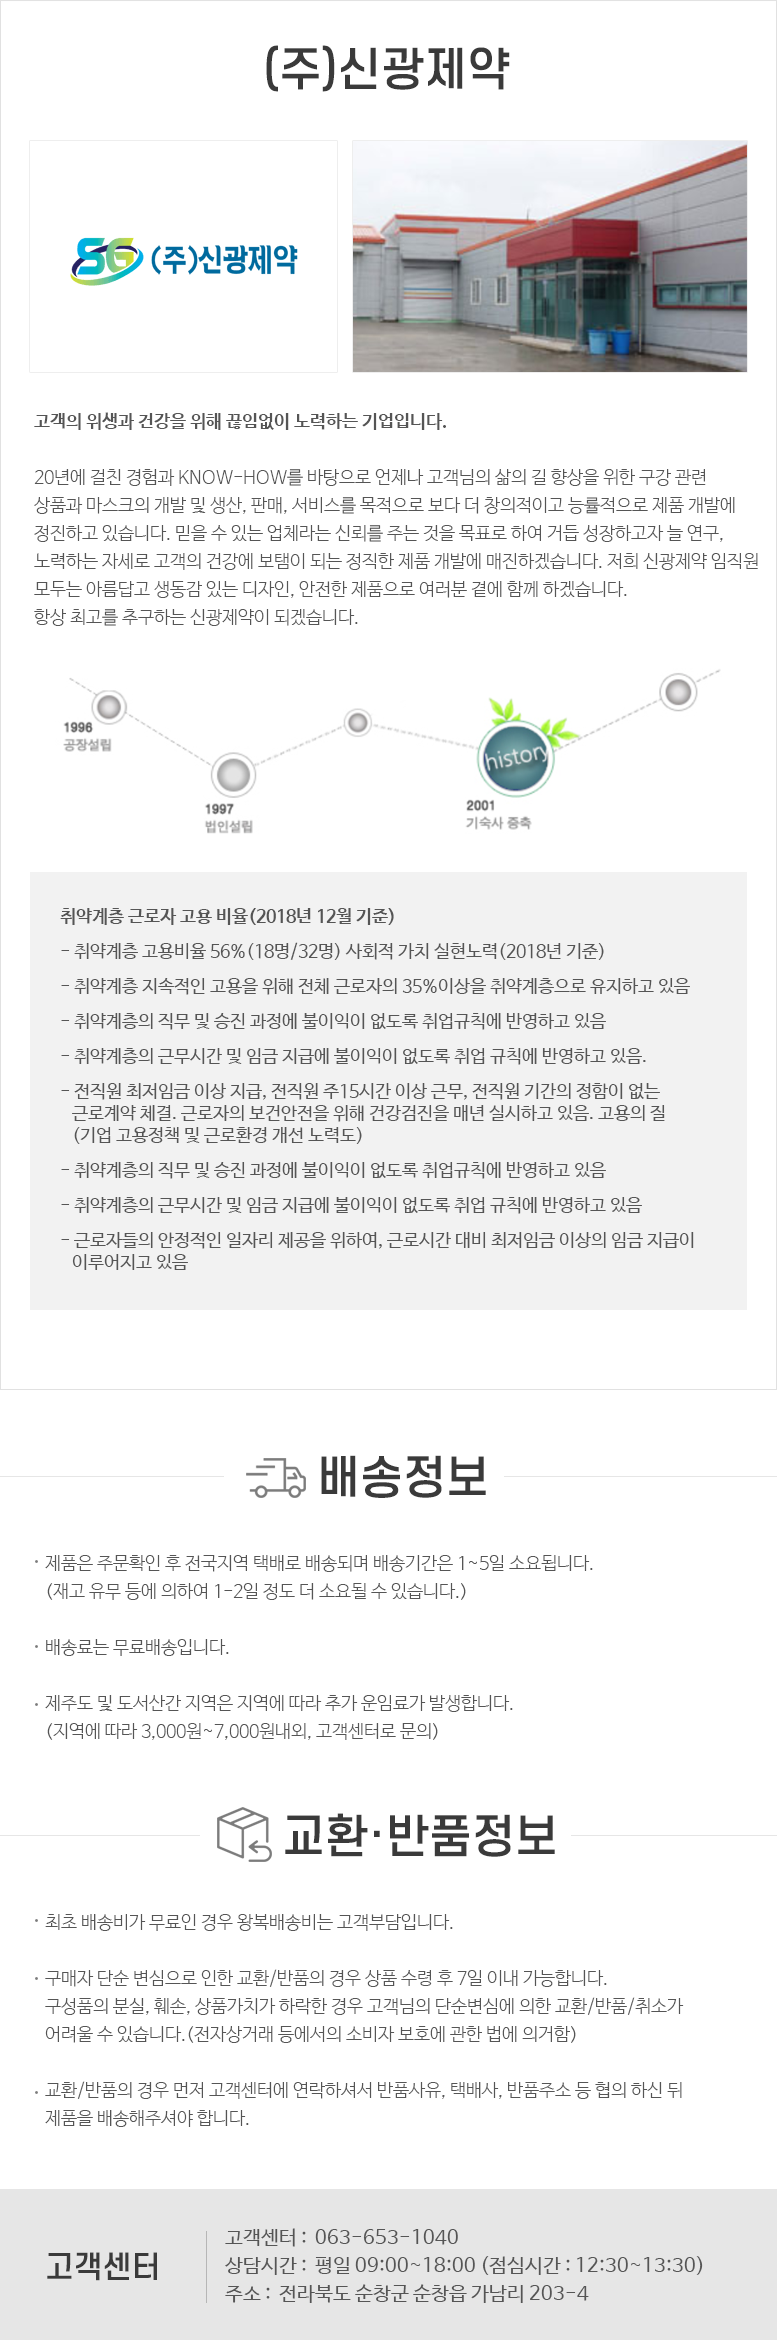 (주)신광제약_하단공통정보.png